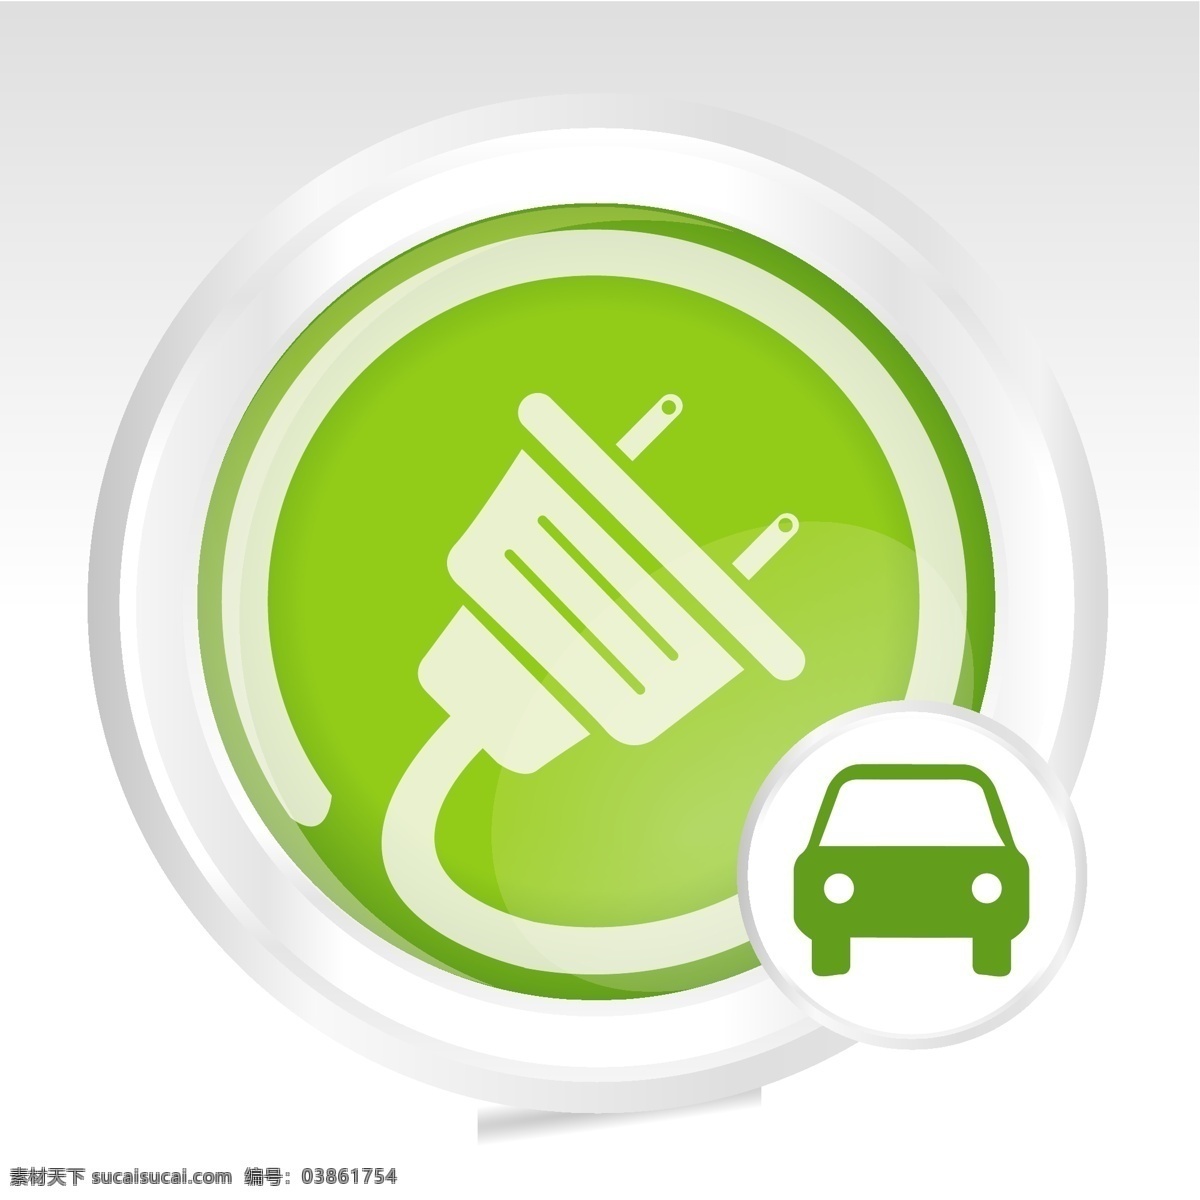 汽车 燃料 绿色 象征 图标 创意图标 环保图标 绿色图标 模板 设计稿 素材元素 图标设计 人形云朵 源文件 矢量图